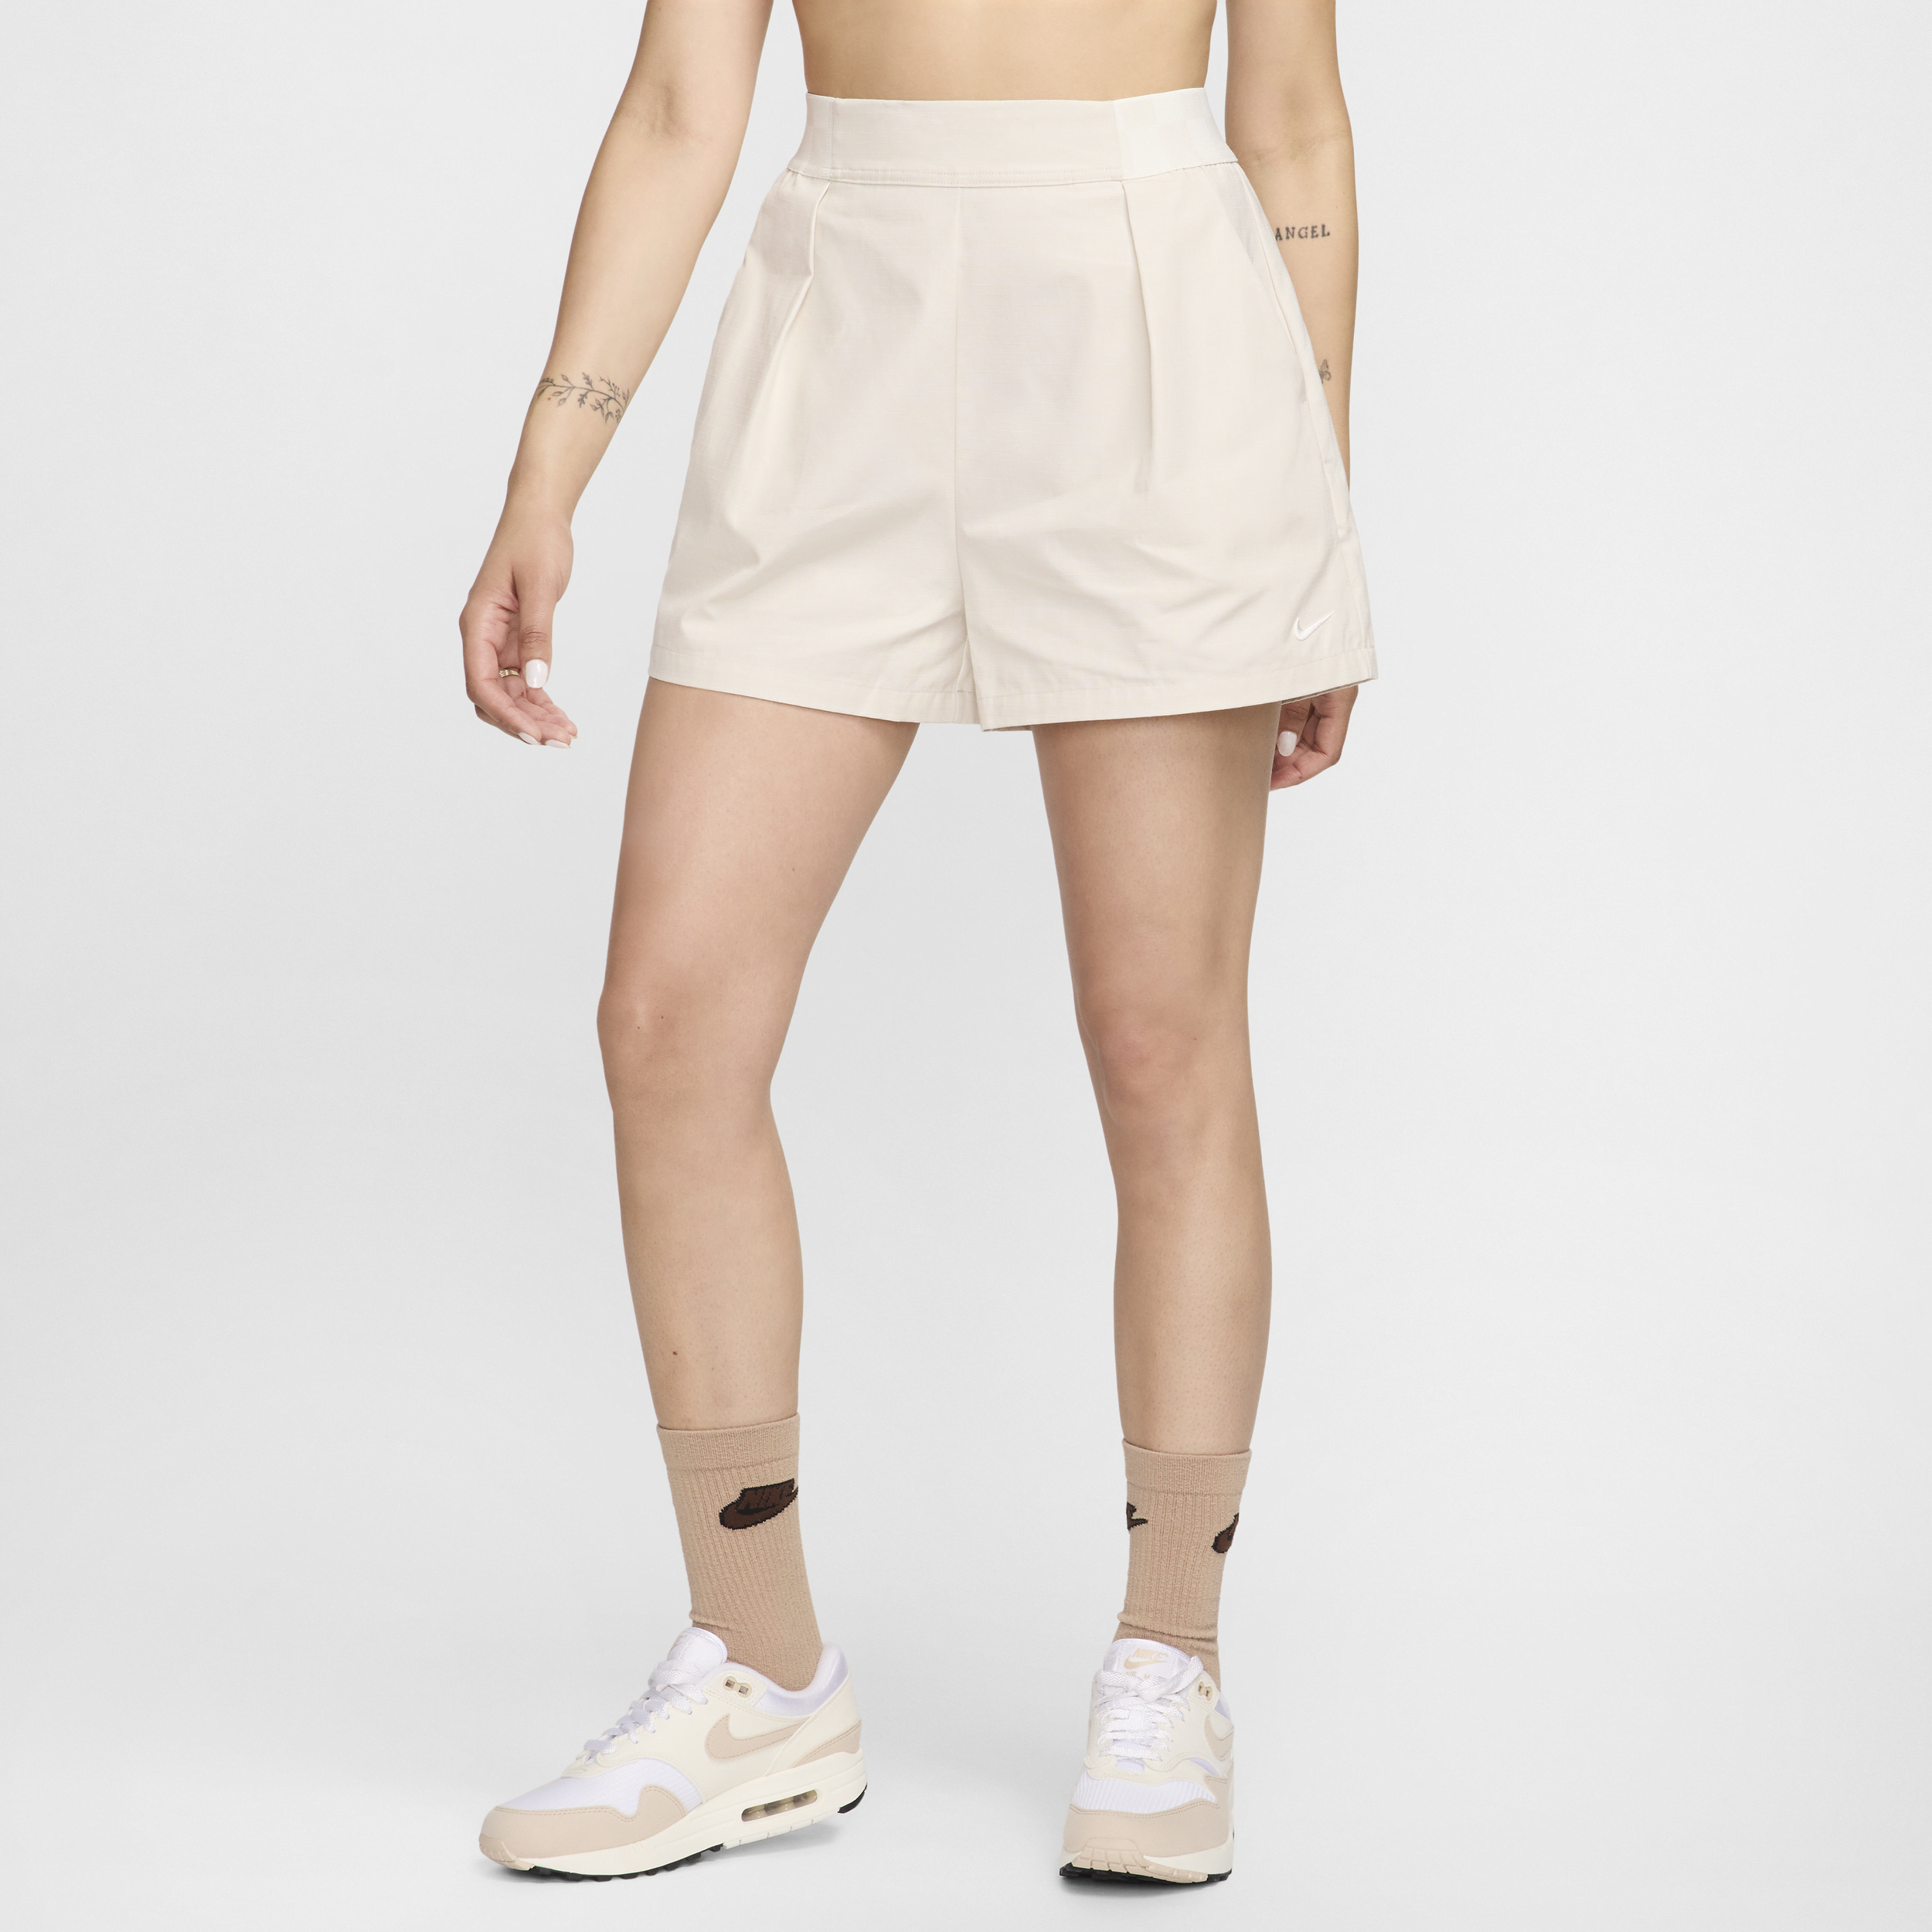 Shorts 8 cm a vita alta Nike Sportswear Collection – Donna - Marrone